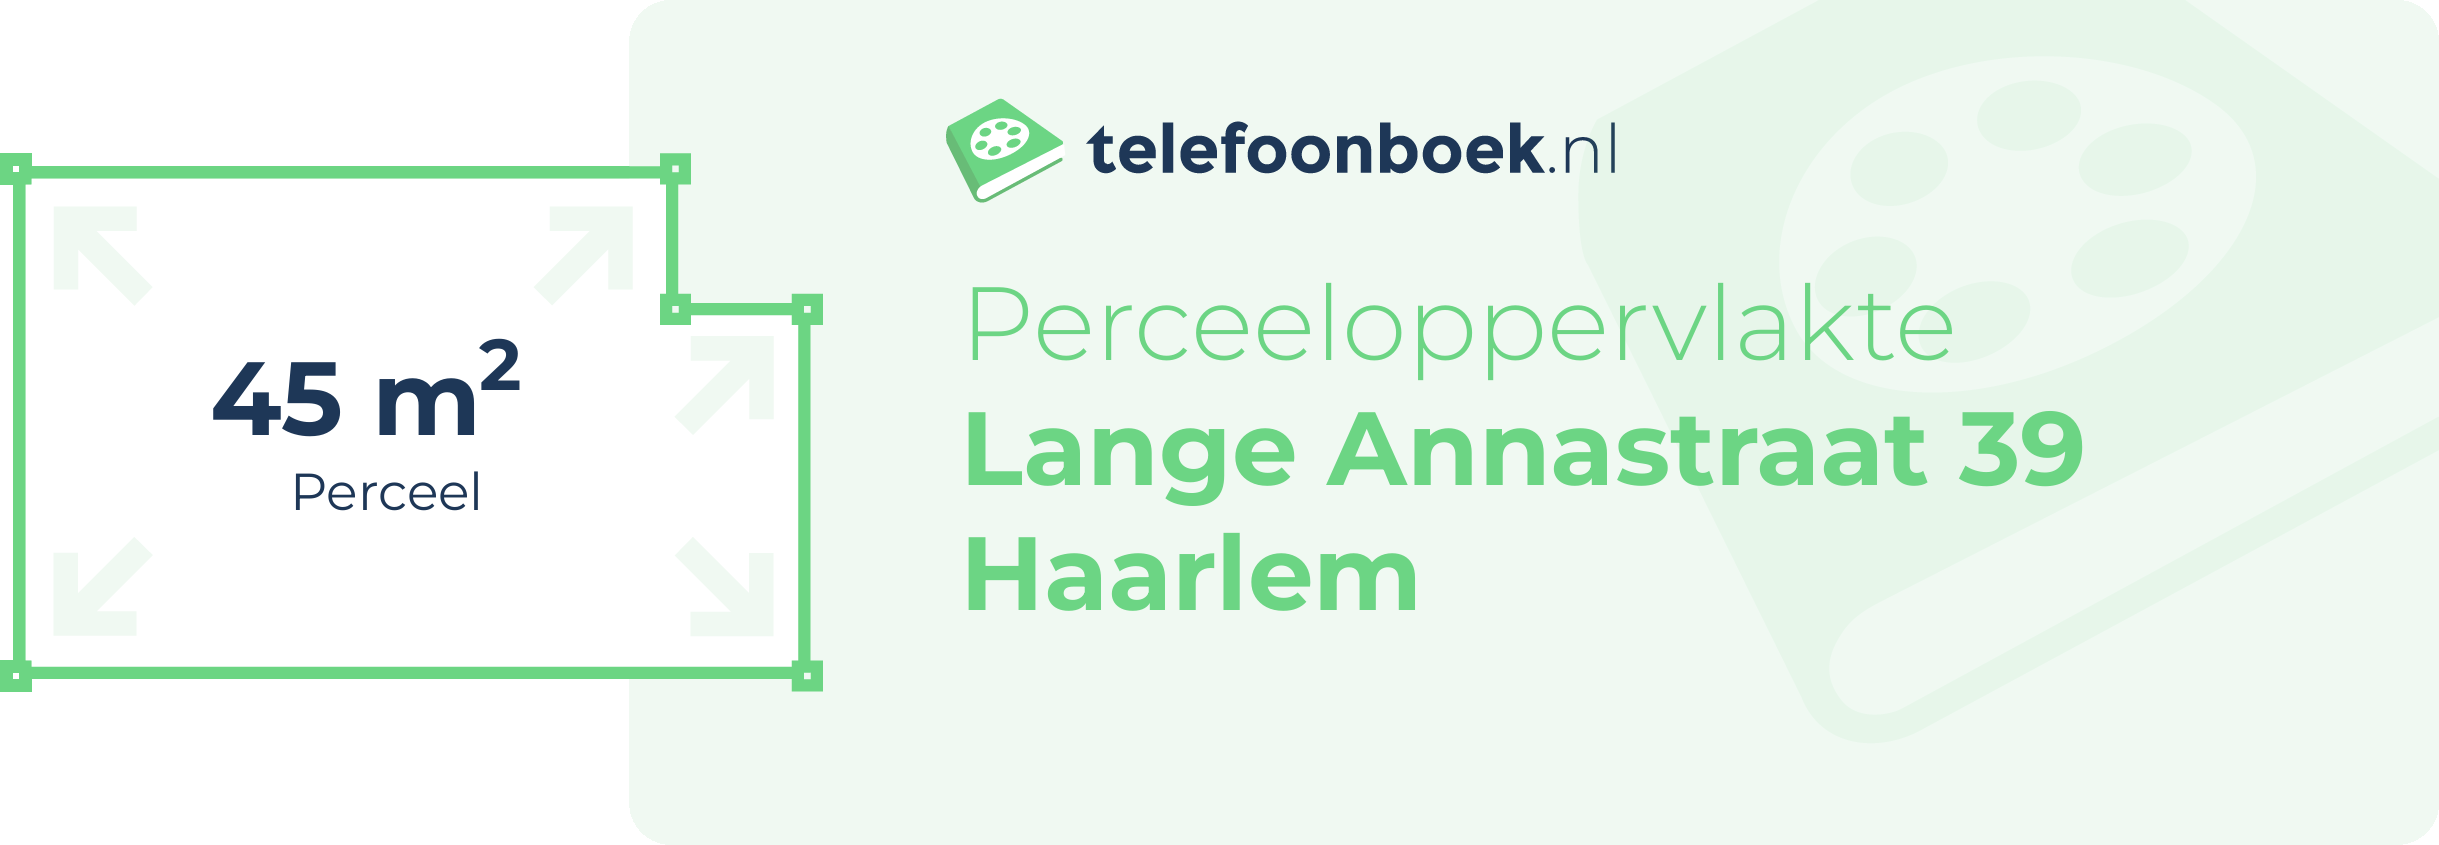 Perceeloppervlakte Lange Annastraat 39 Haarlem